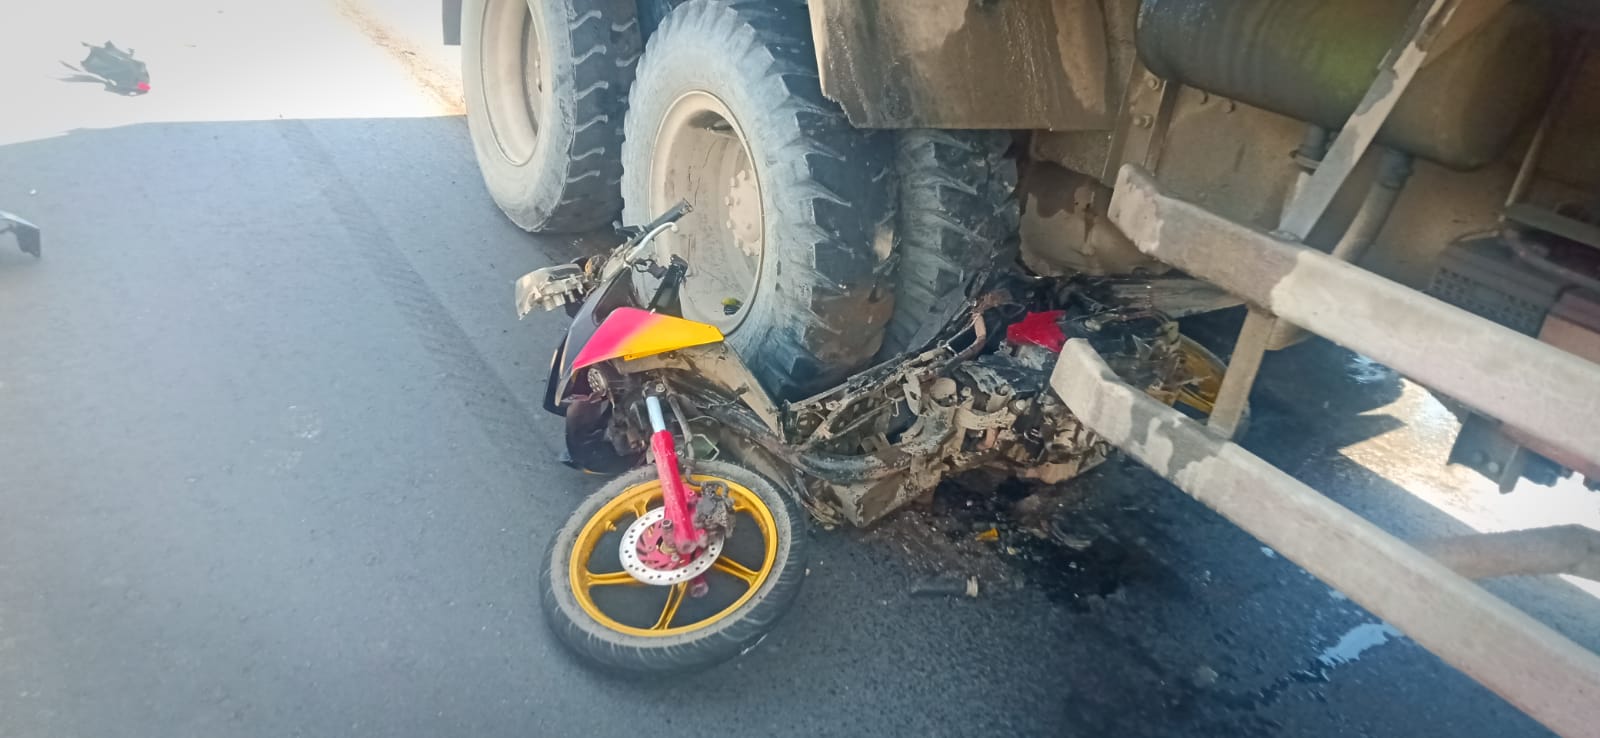 Sepeda motor milik Jermias Alom dilindas dumptruk.